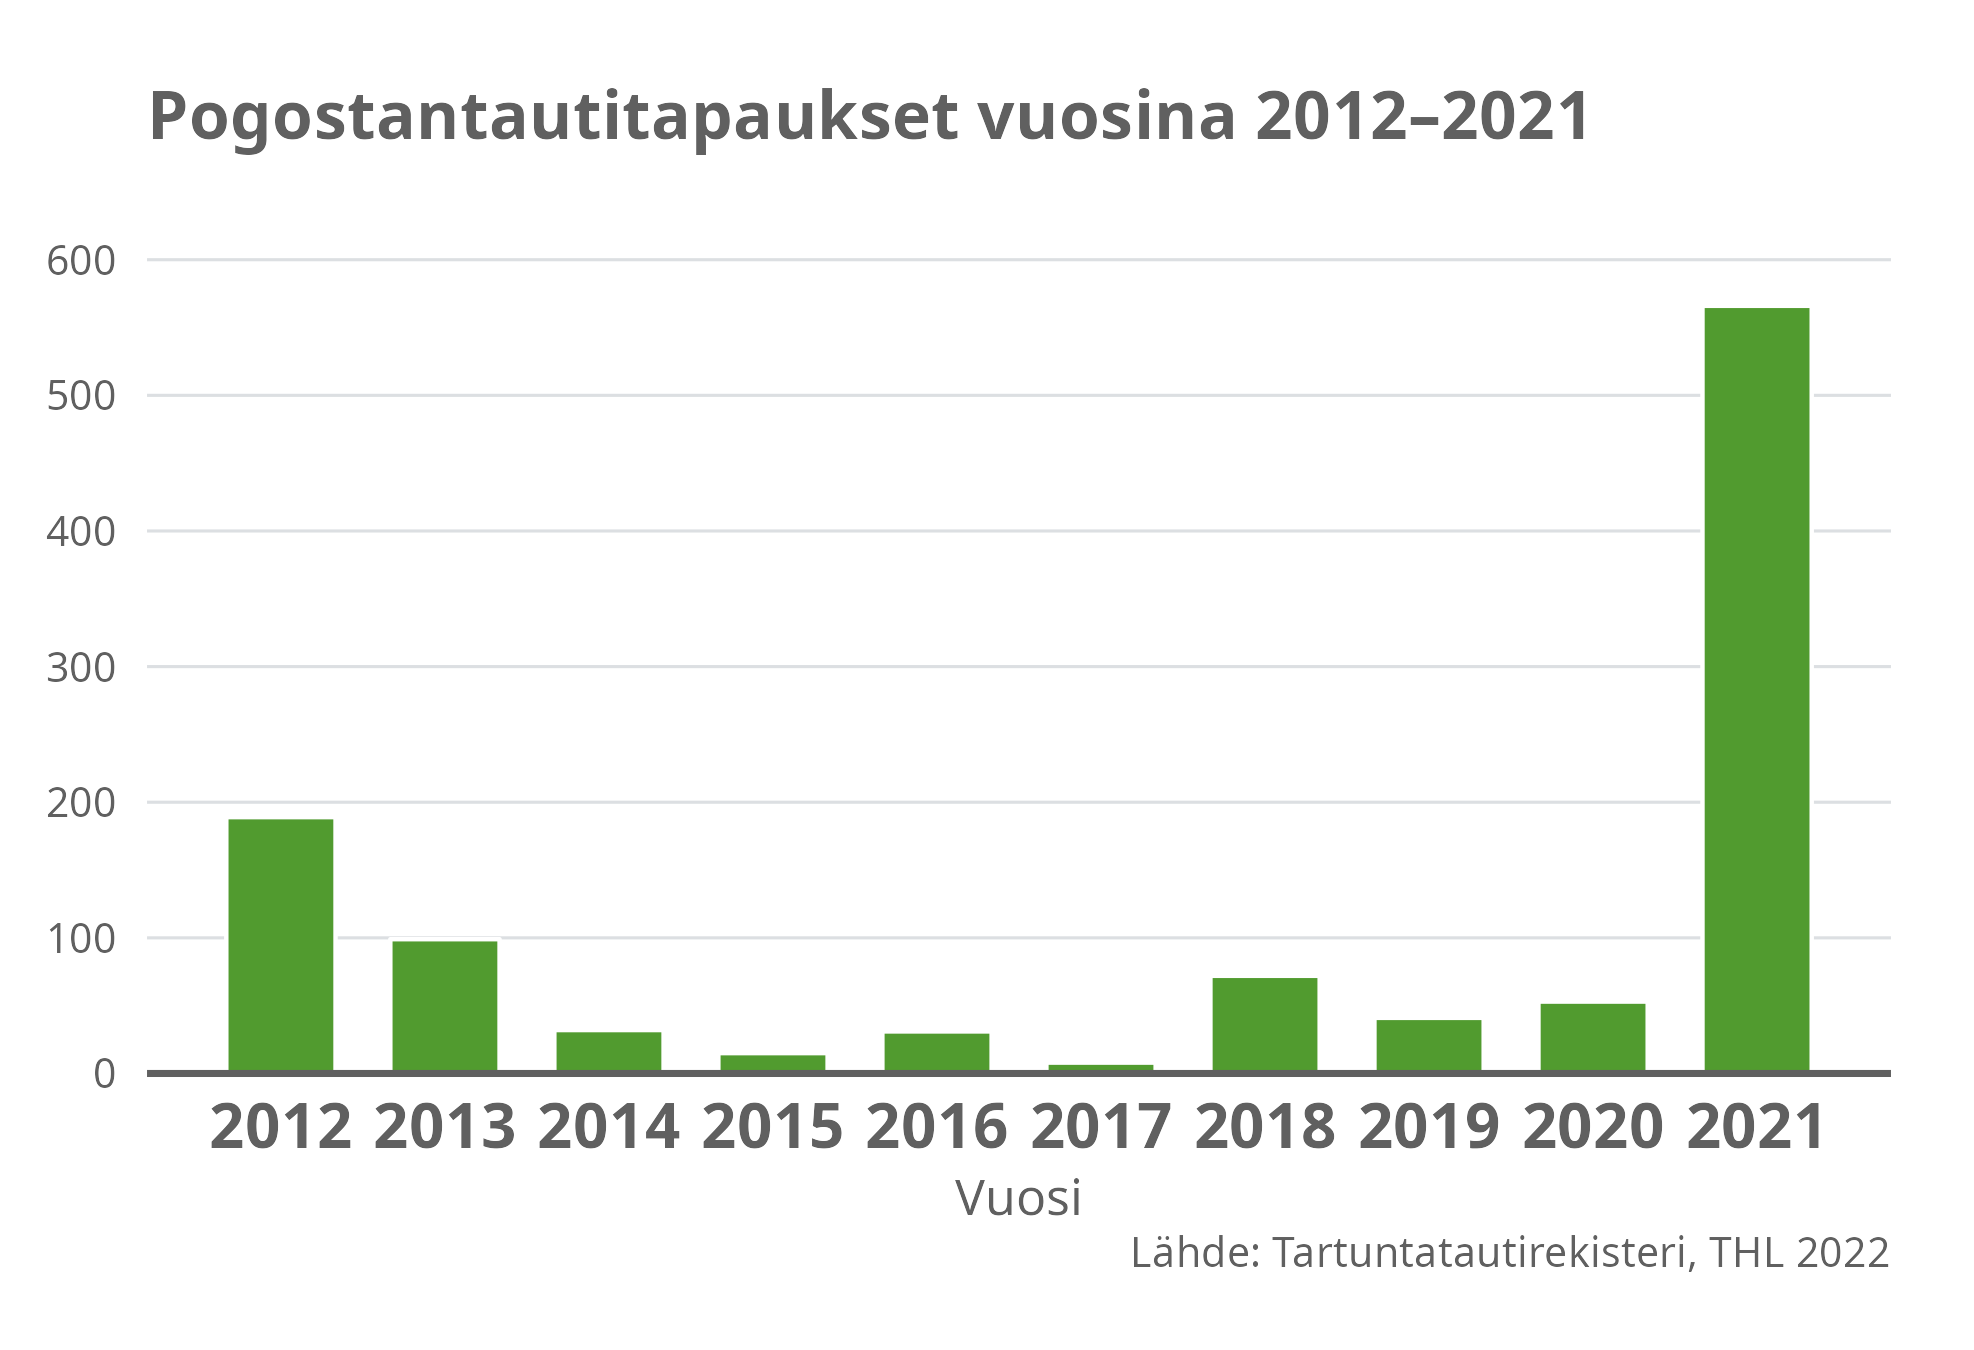 Pogostantautitapaukset vuosina 2012-2021.